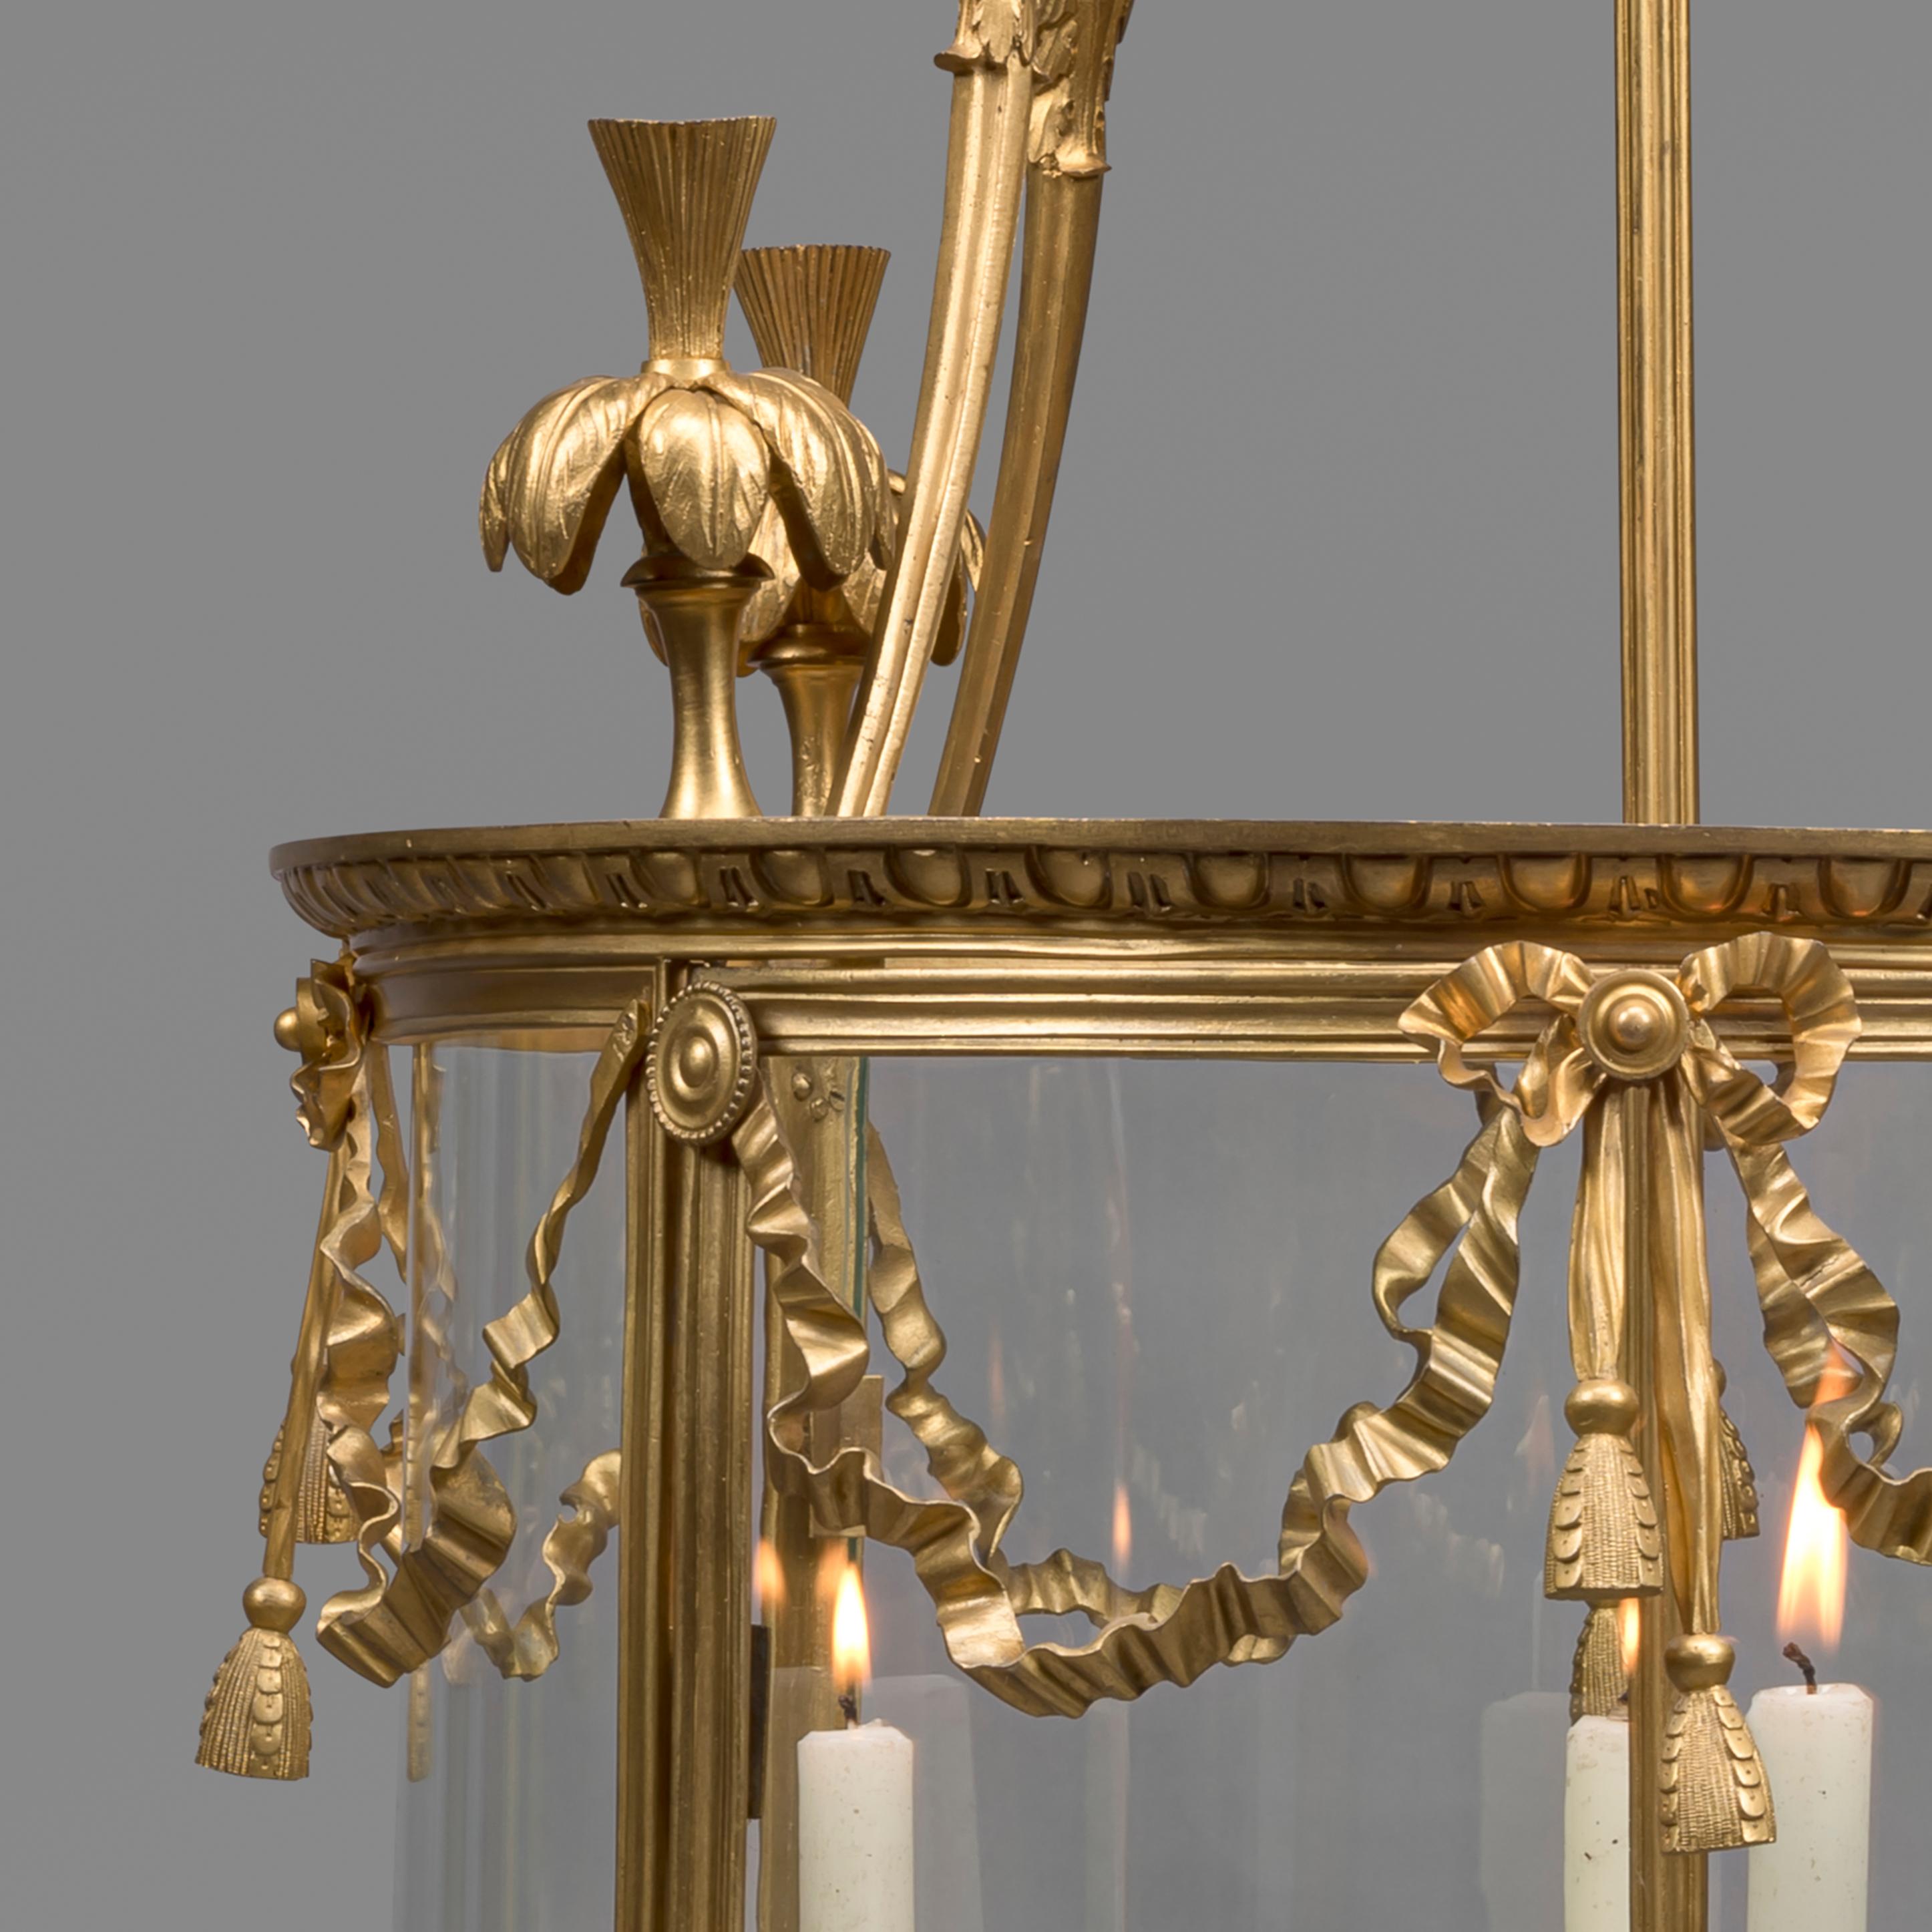 Eine große zylindrische Laterne aus vergoldeter Bronze im Louis-XVI-Stil mit vier Lichtern.

Diese große Laterne hat eine zylindrische Form mit vier gerippten Pfosten, die einen Rahmen mit Perlen und Bändern tragen, der von einer Straußenfahne